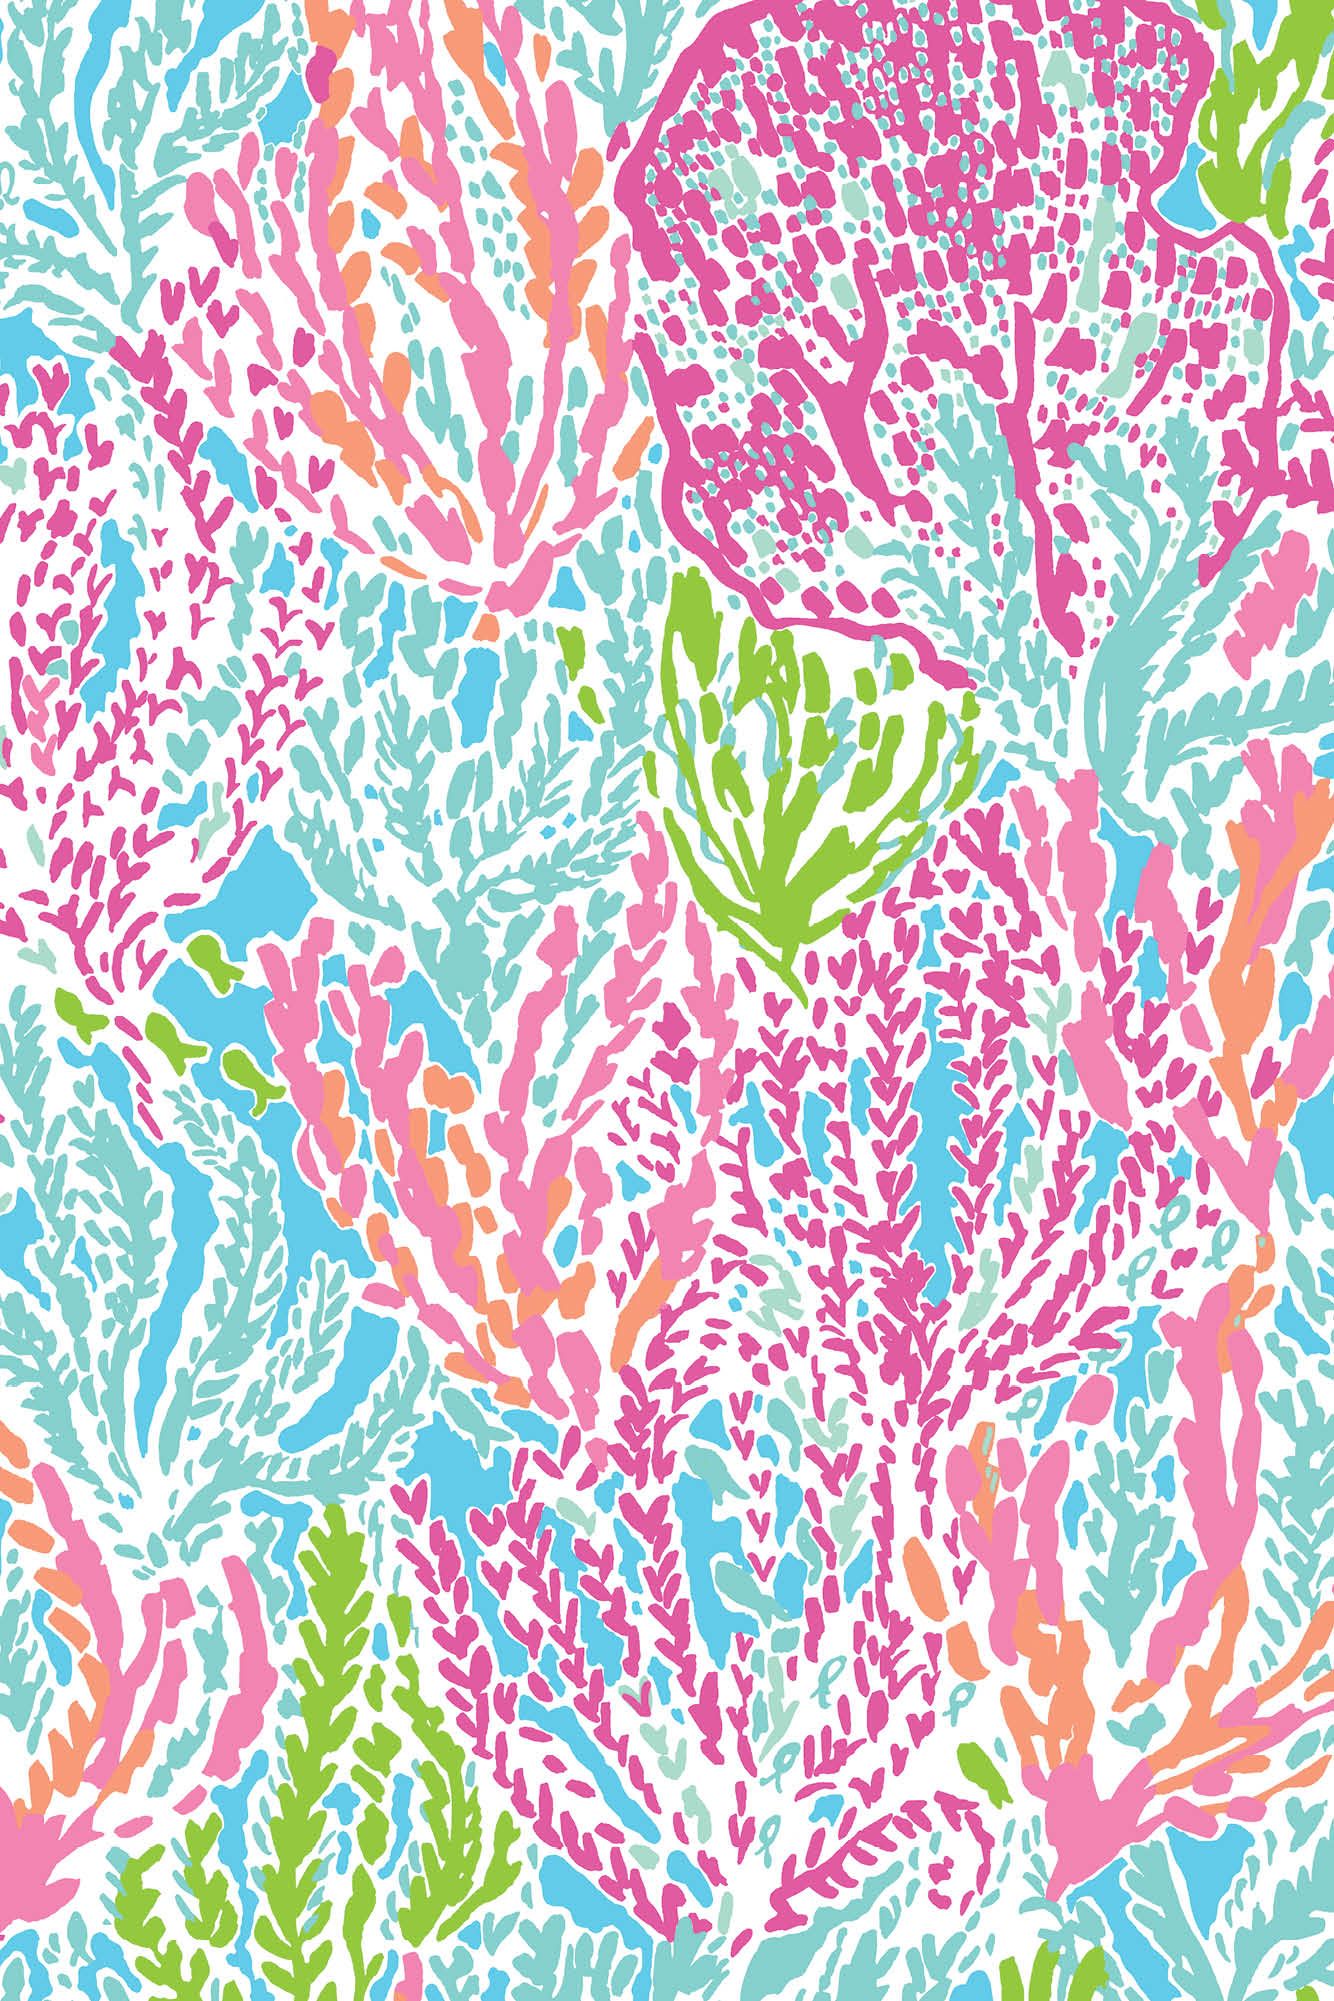 リリー・ピューリッツァーiphoneの壁紙,パターン,ピンク,葉,視覚芸術,繊維